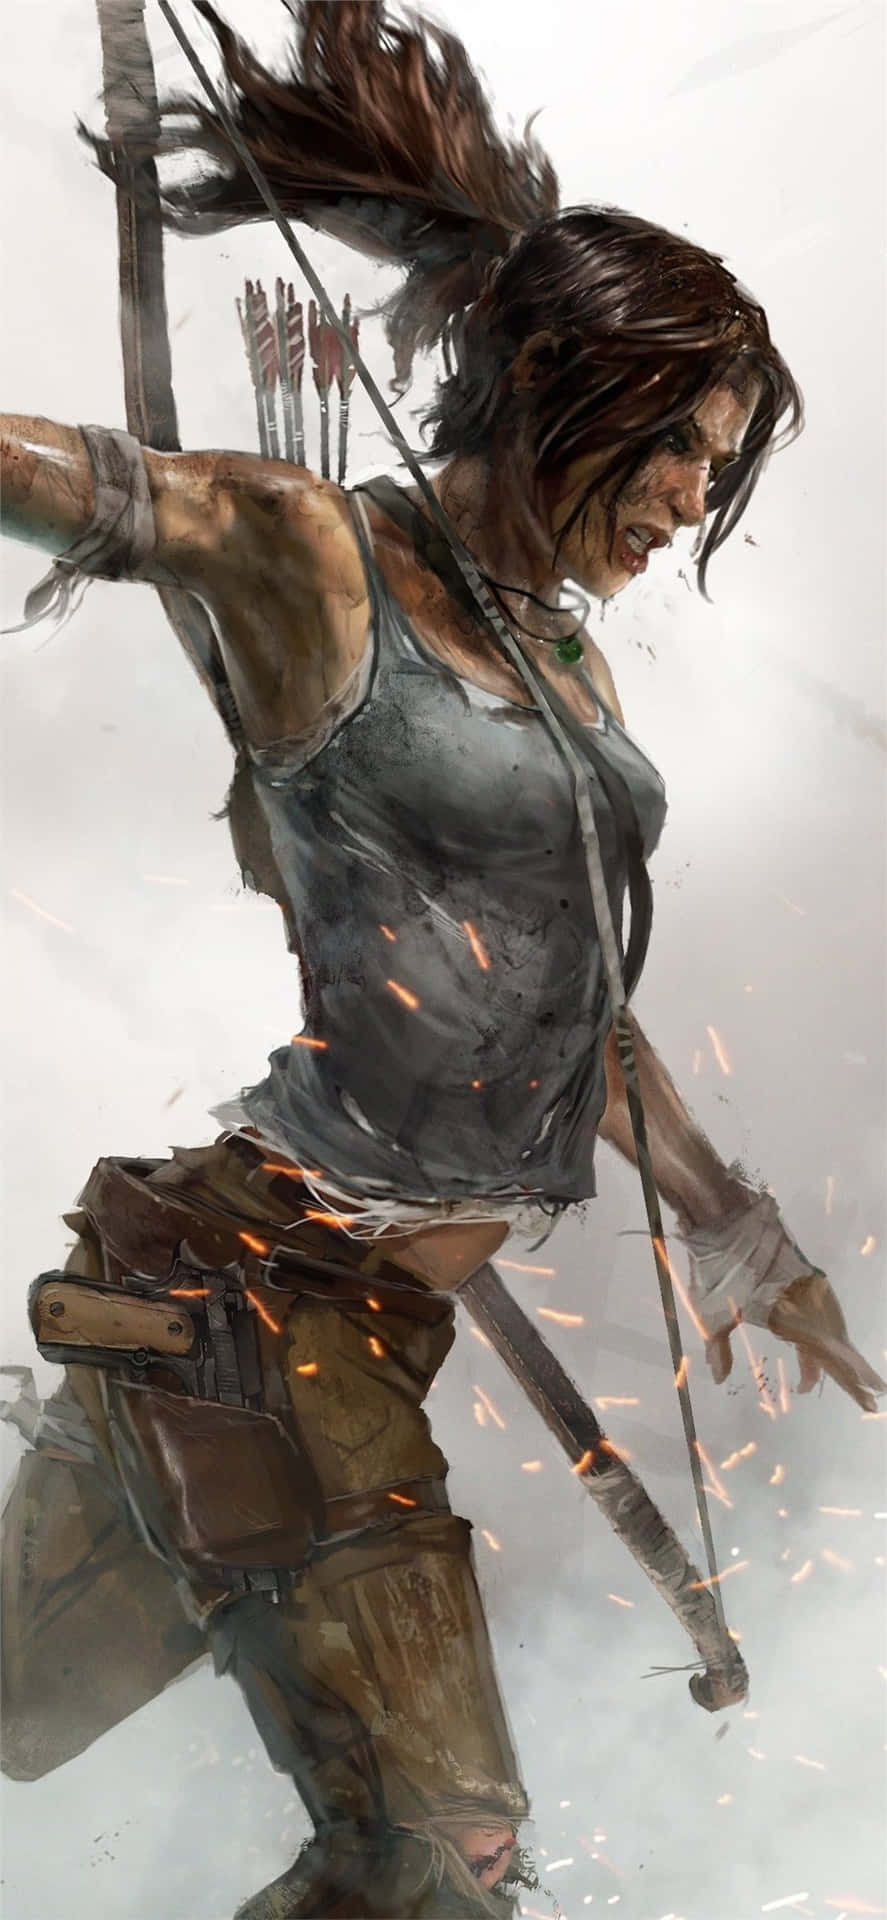 Intraprendiuna Avventura Emozionante In Tomb Raider Sfondo